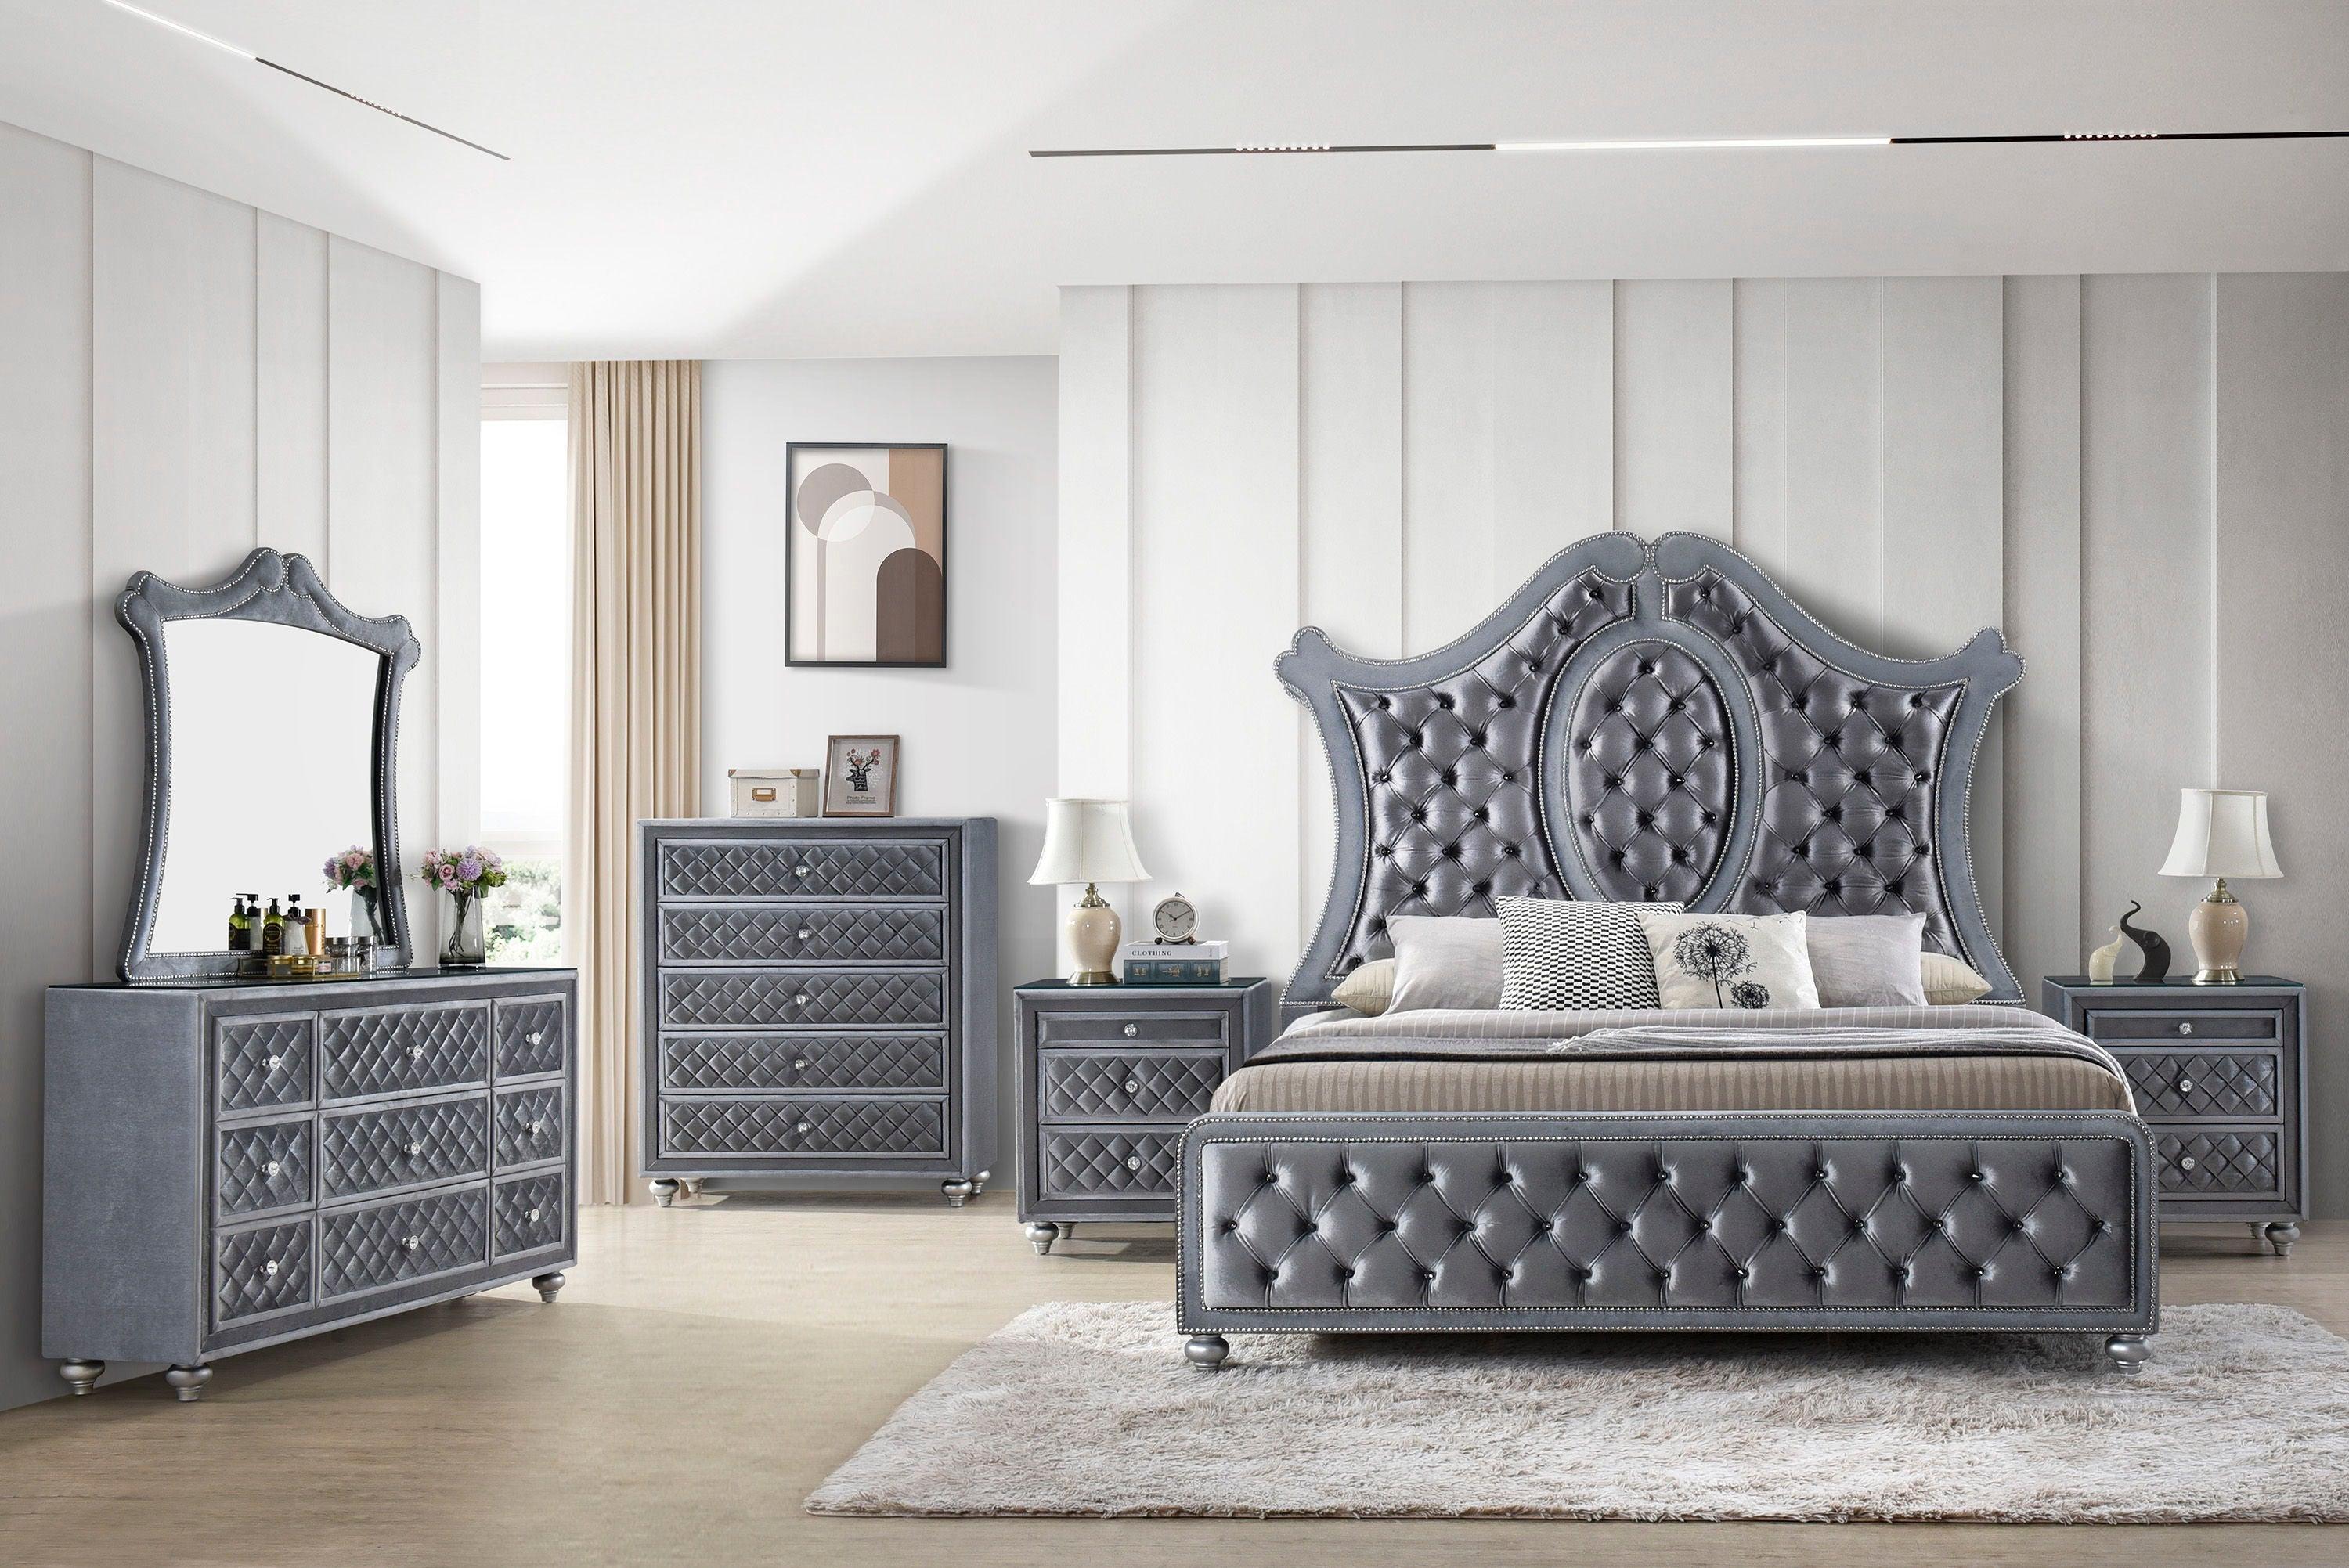 Crown Mark - Voltare - Bed - 5th Avenue Furniture